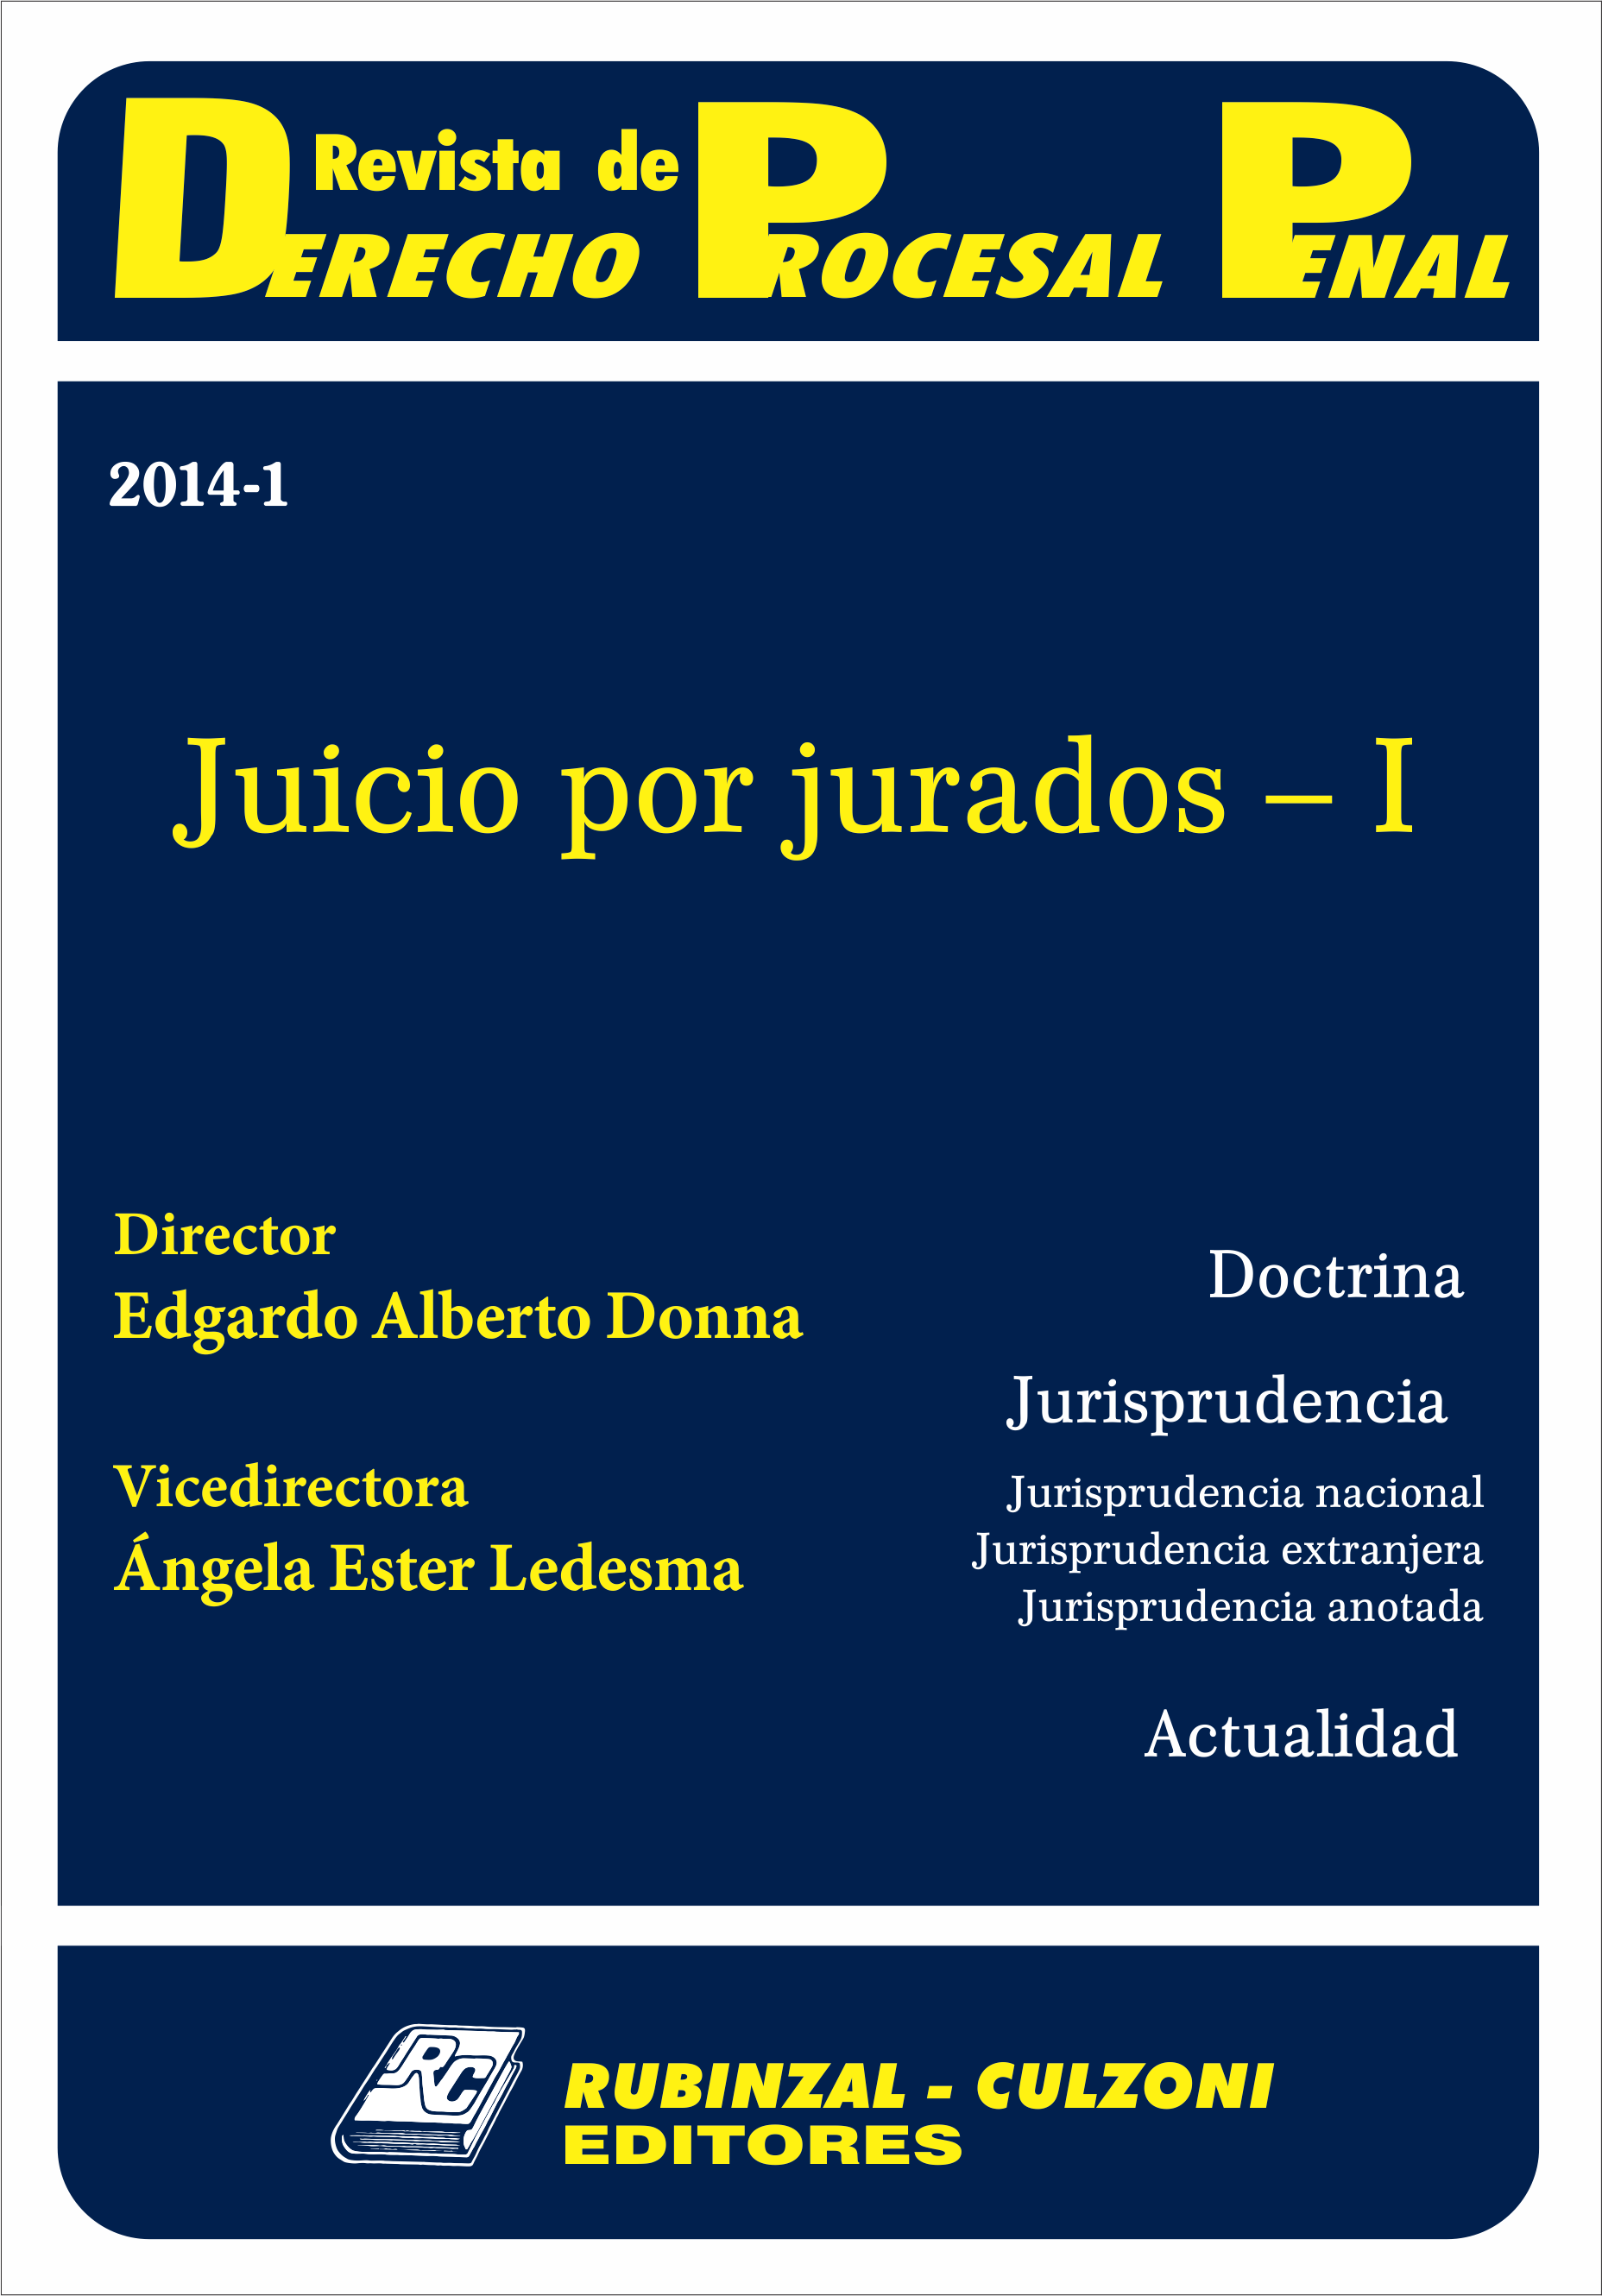 Revista de Derecho Procesal Penal - Juicio por jurados - I